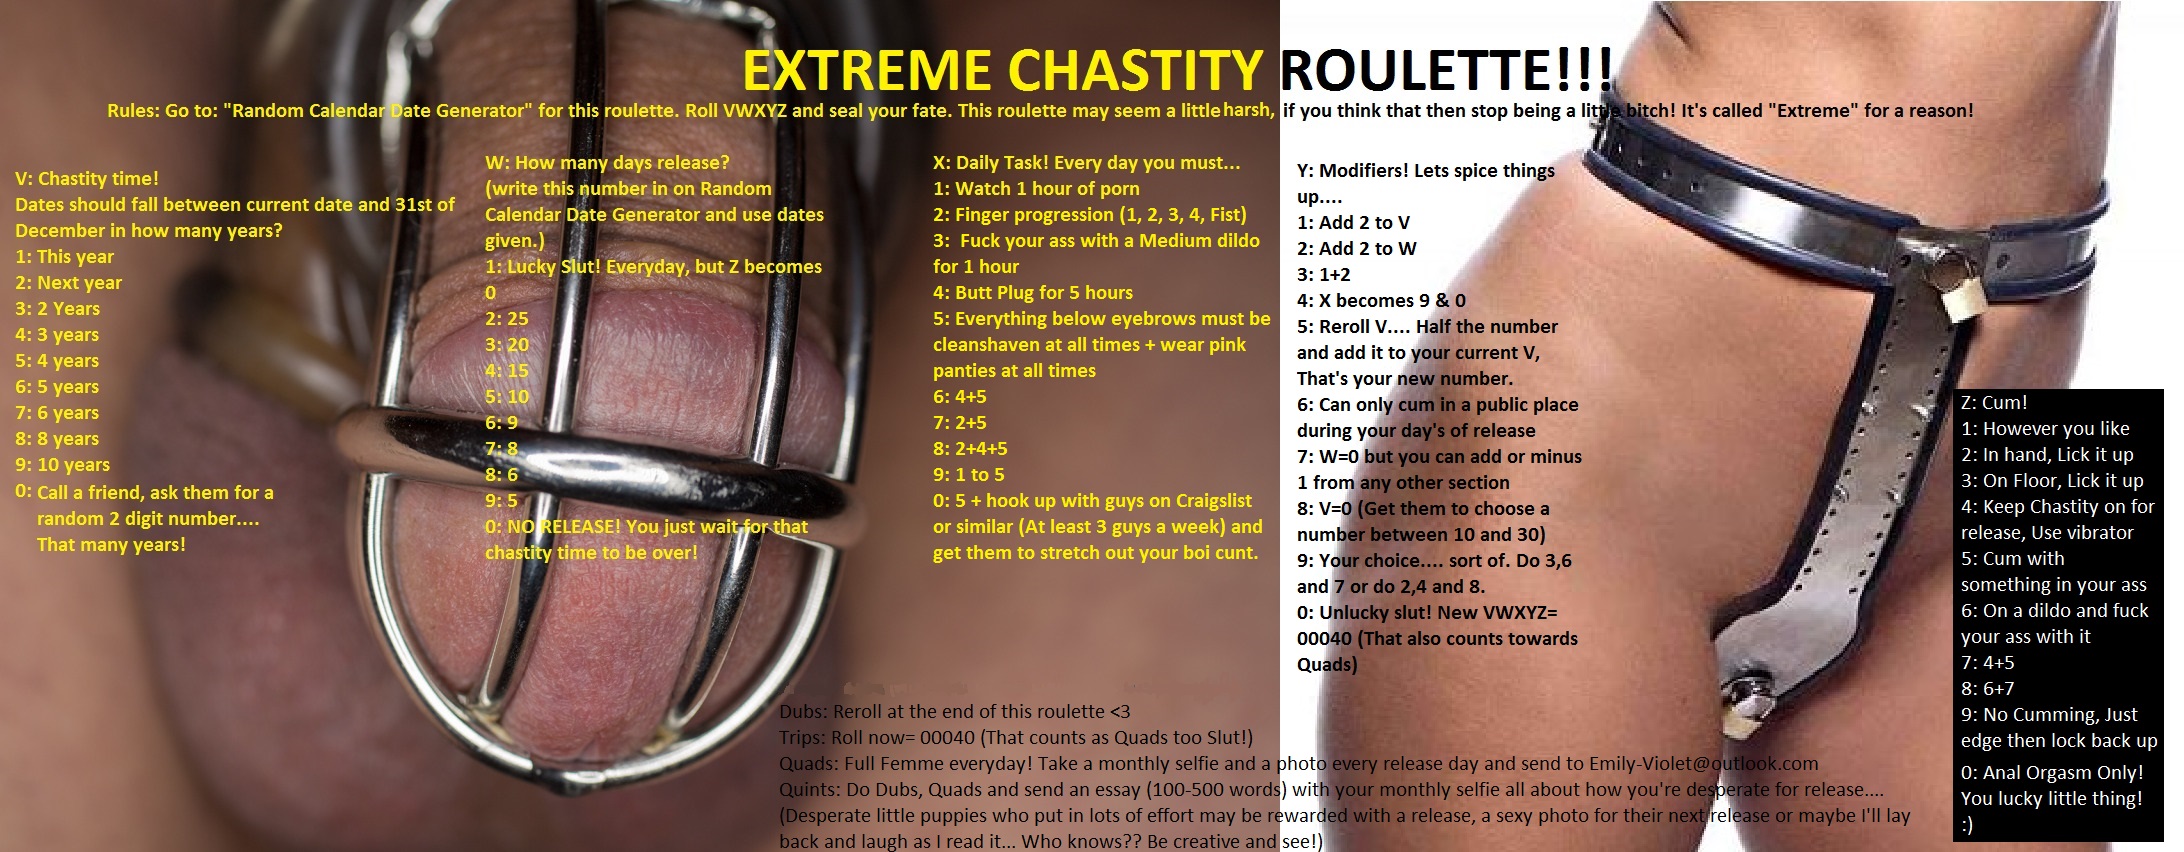 Extreme Chastity Fap Roulette - Fap Roulette.